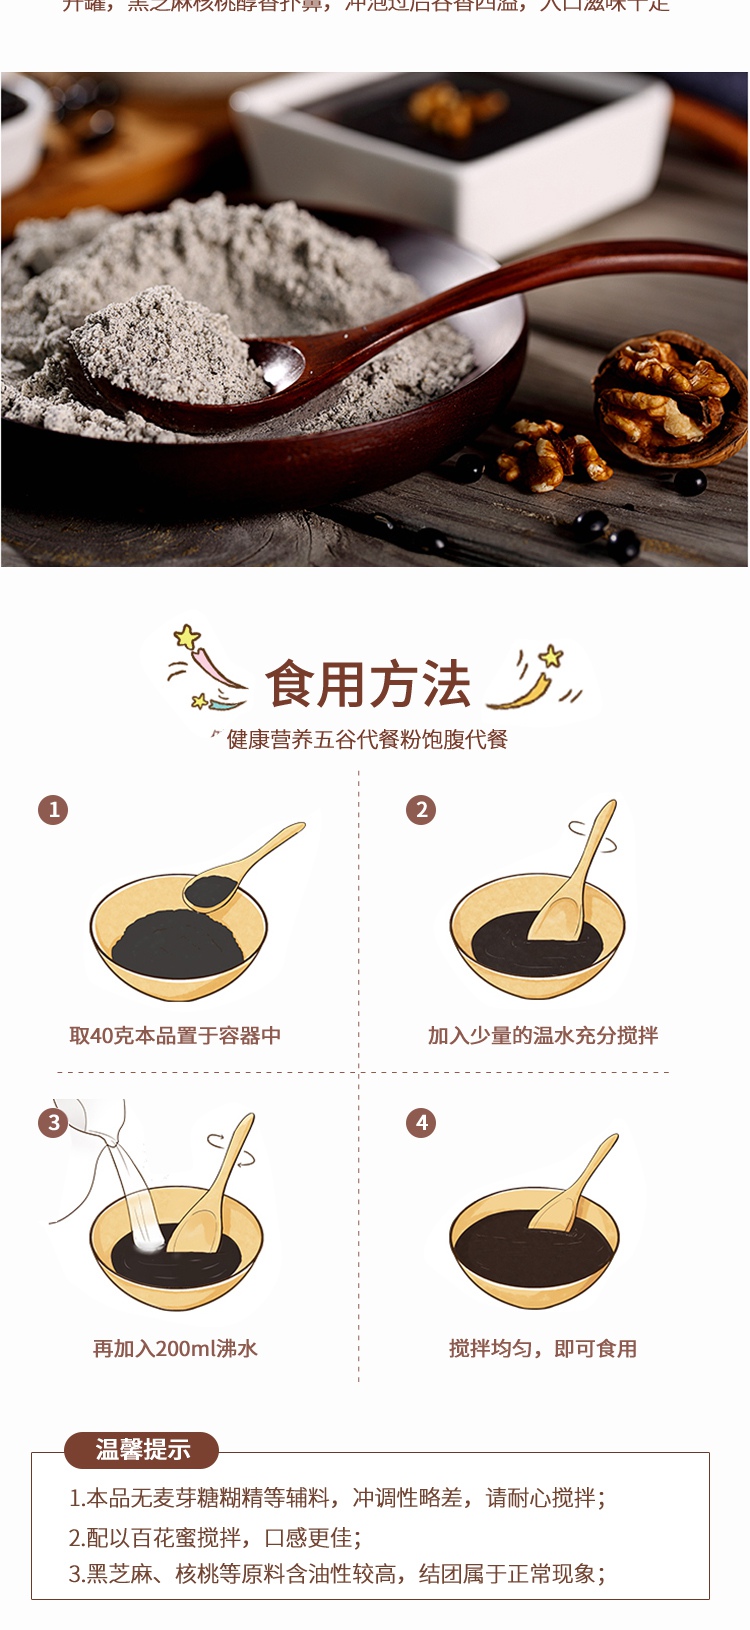 淡雅小清新日常通用五谷代餐粉米稀食品详情页